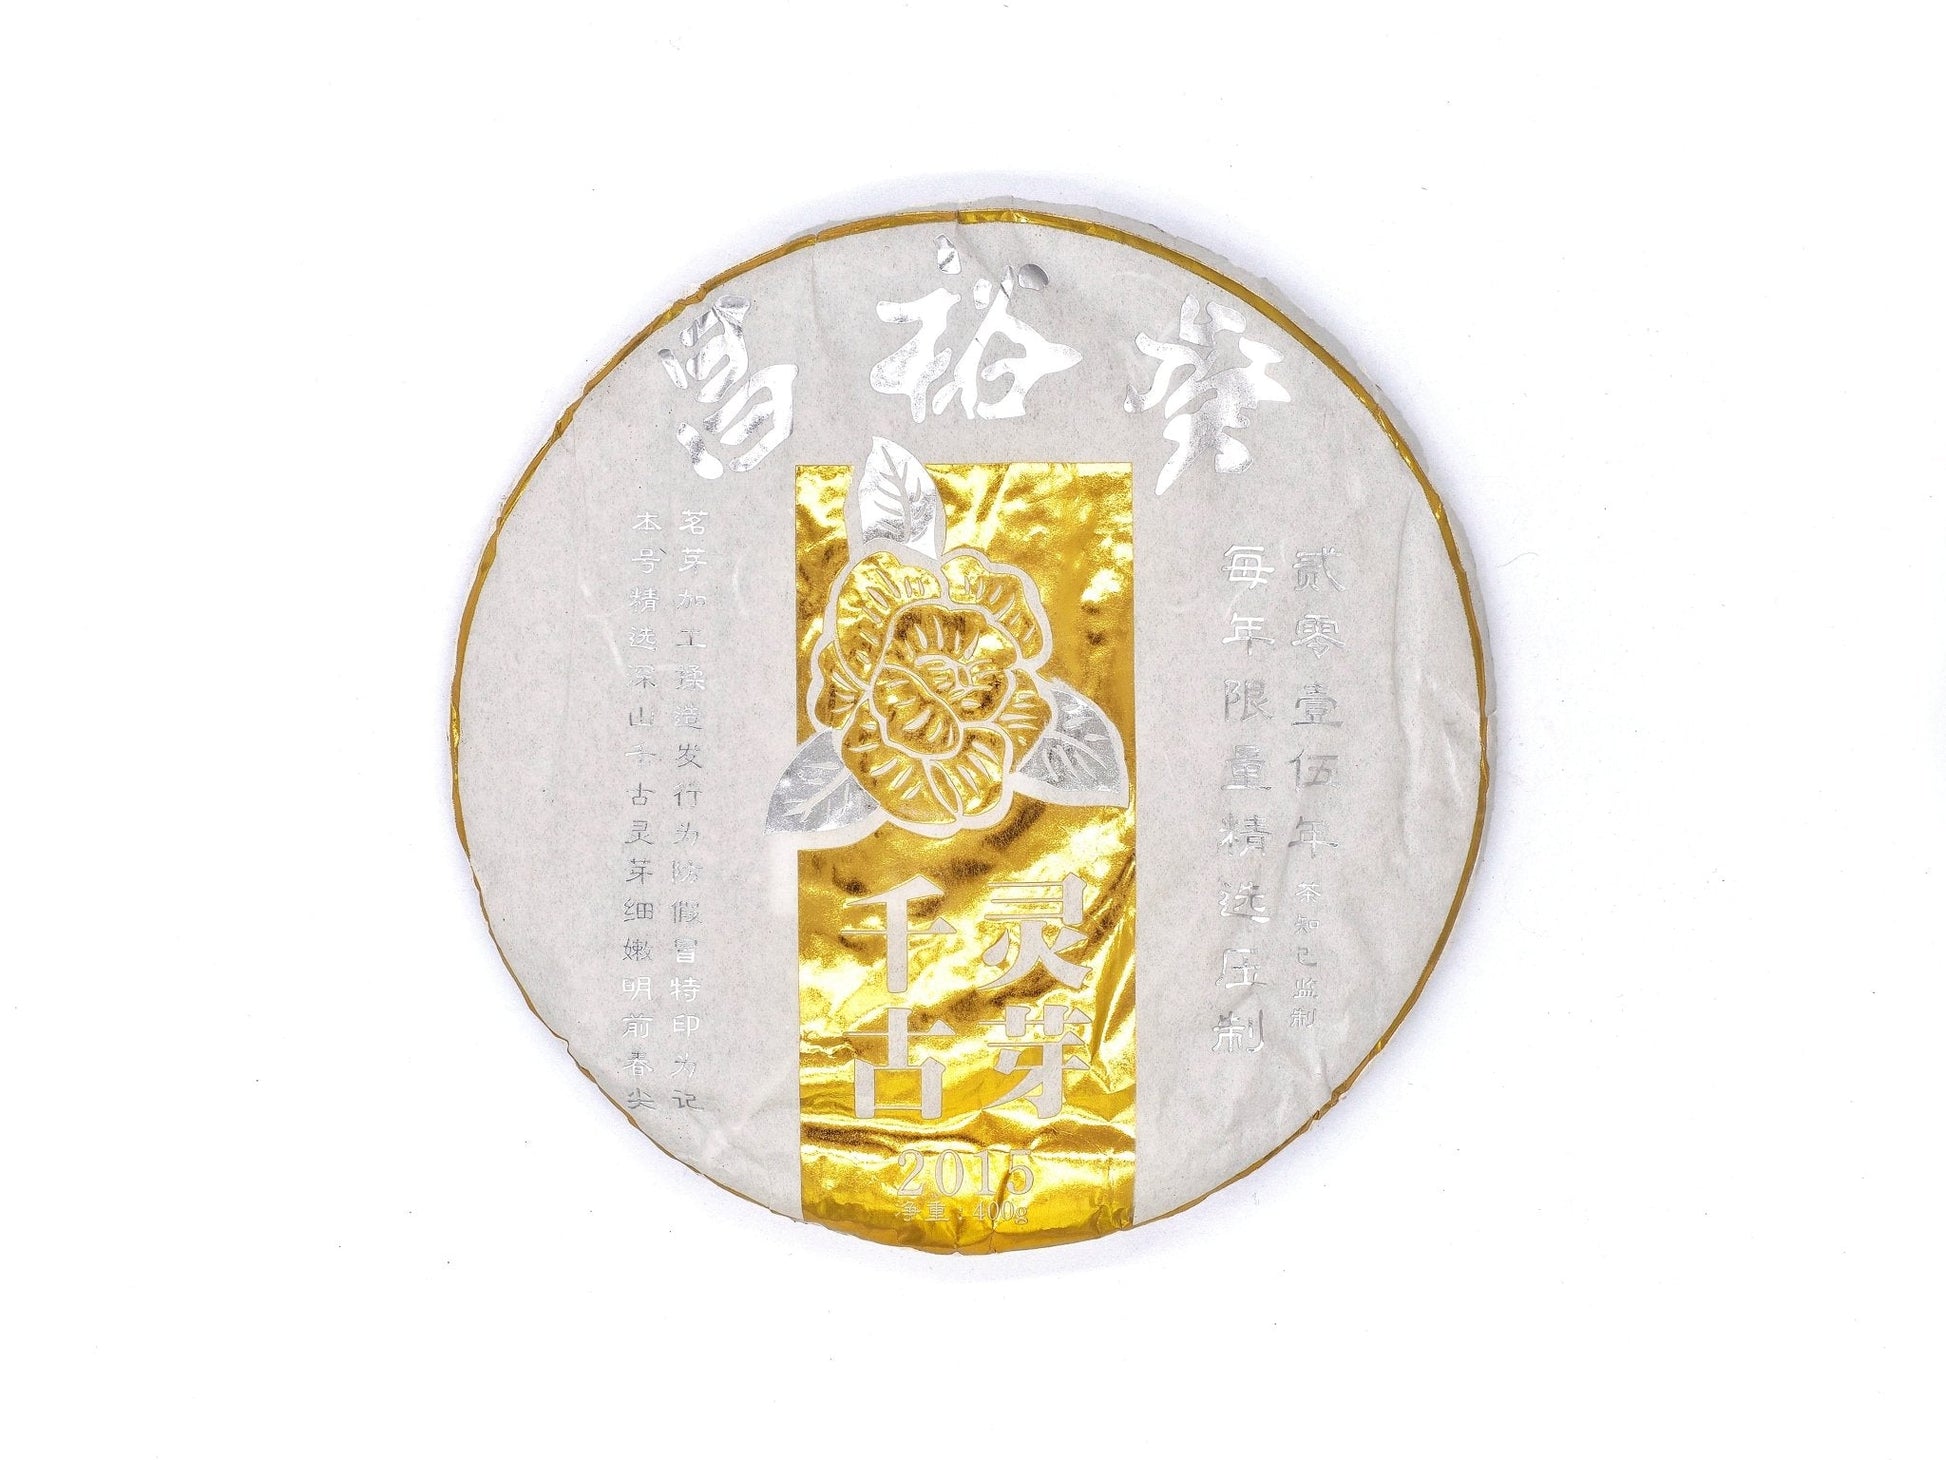 Sheng Pu-Er, Qian Gu Ling Ya Pu-Er Tea, Cha Zhi Ji